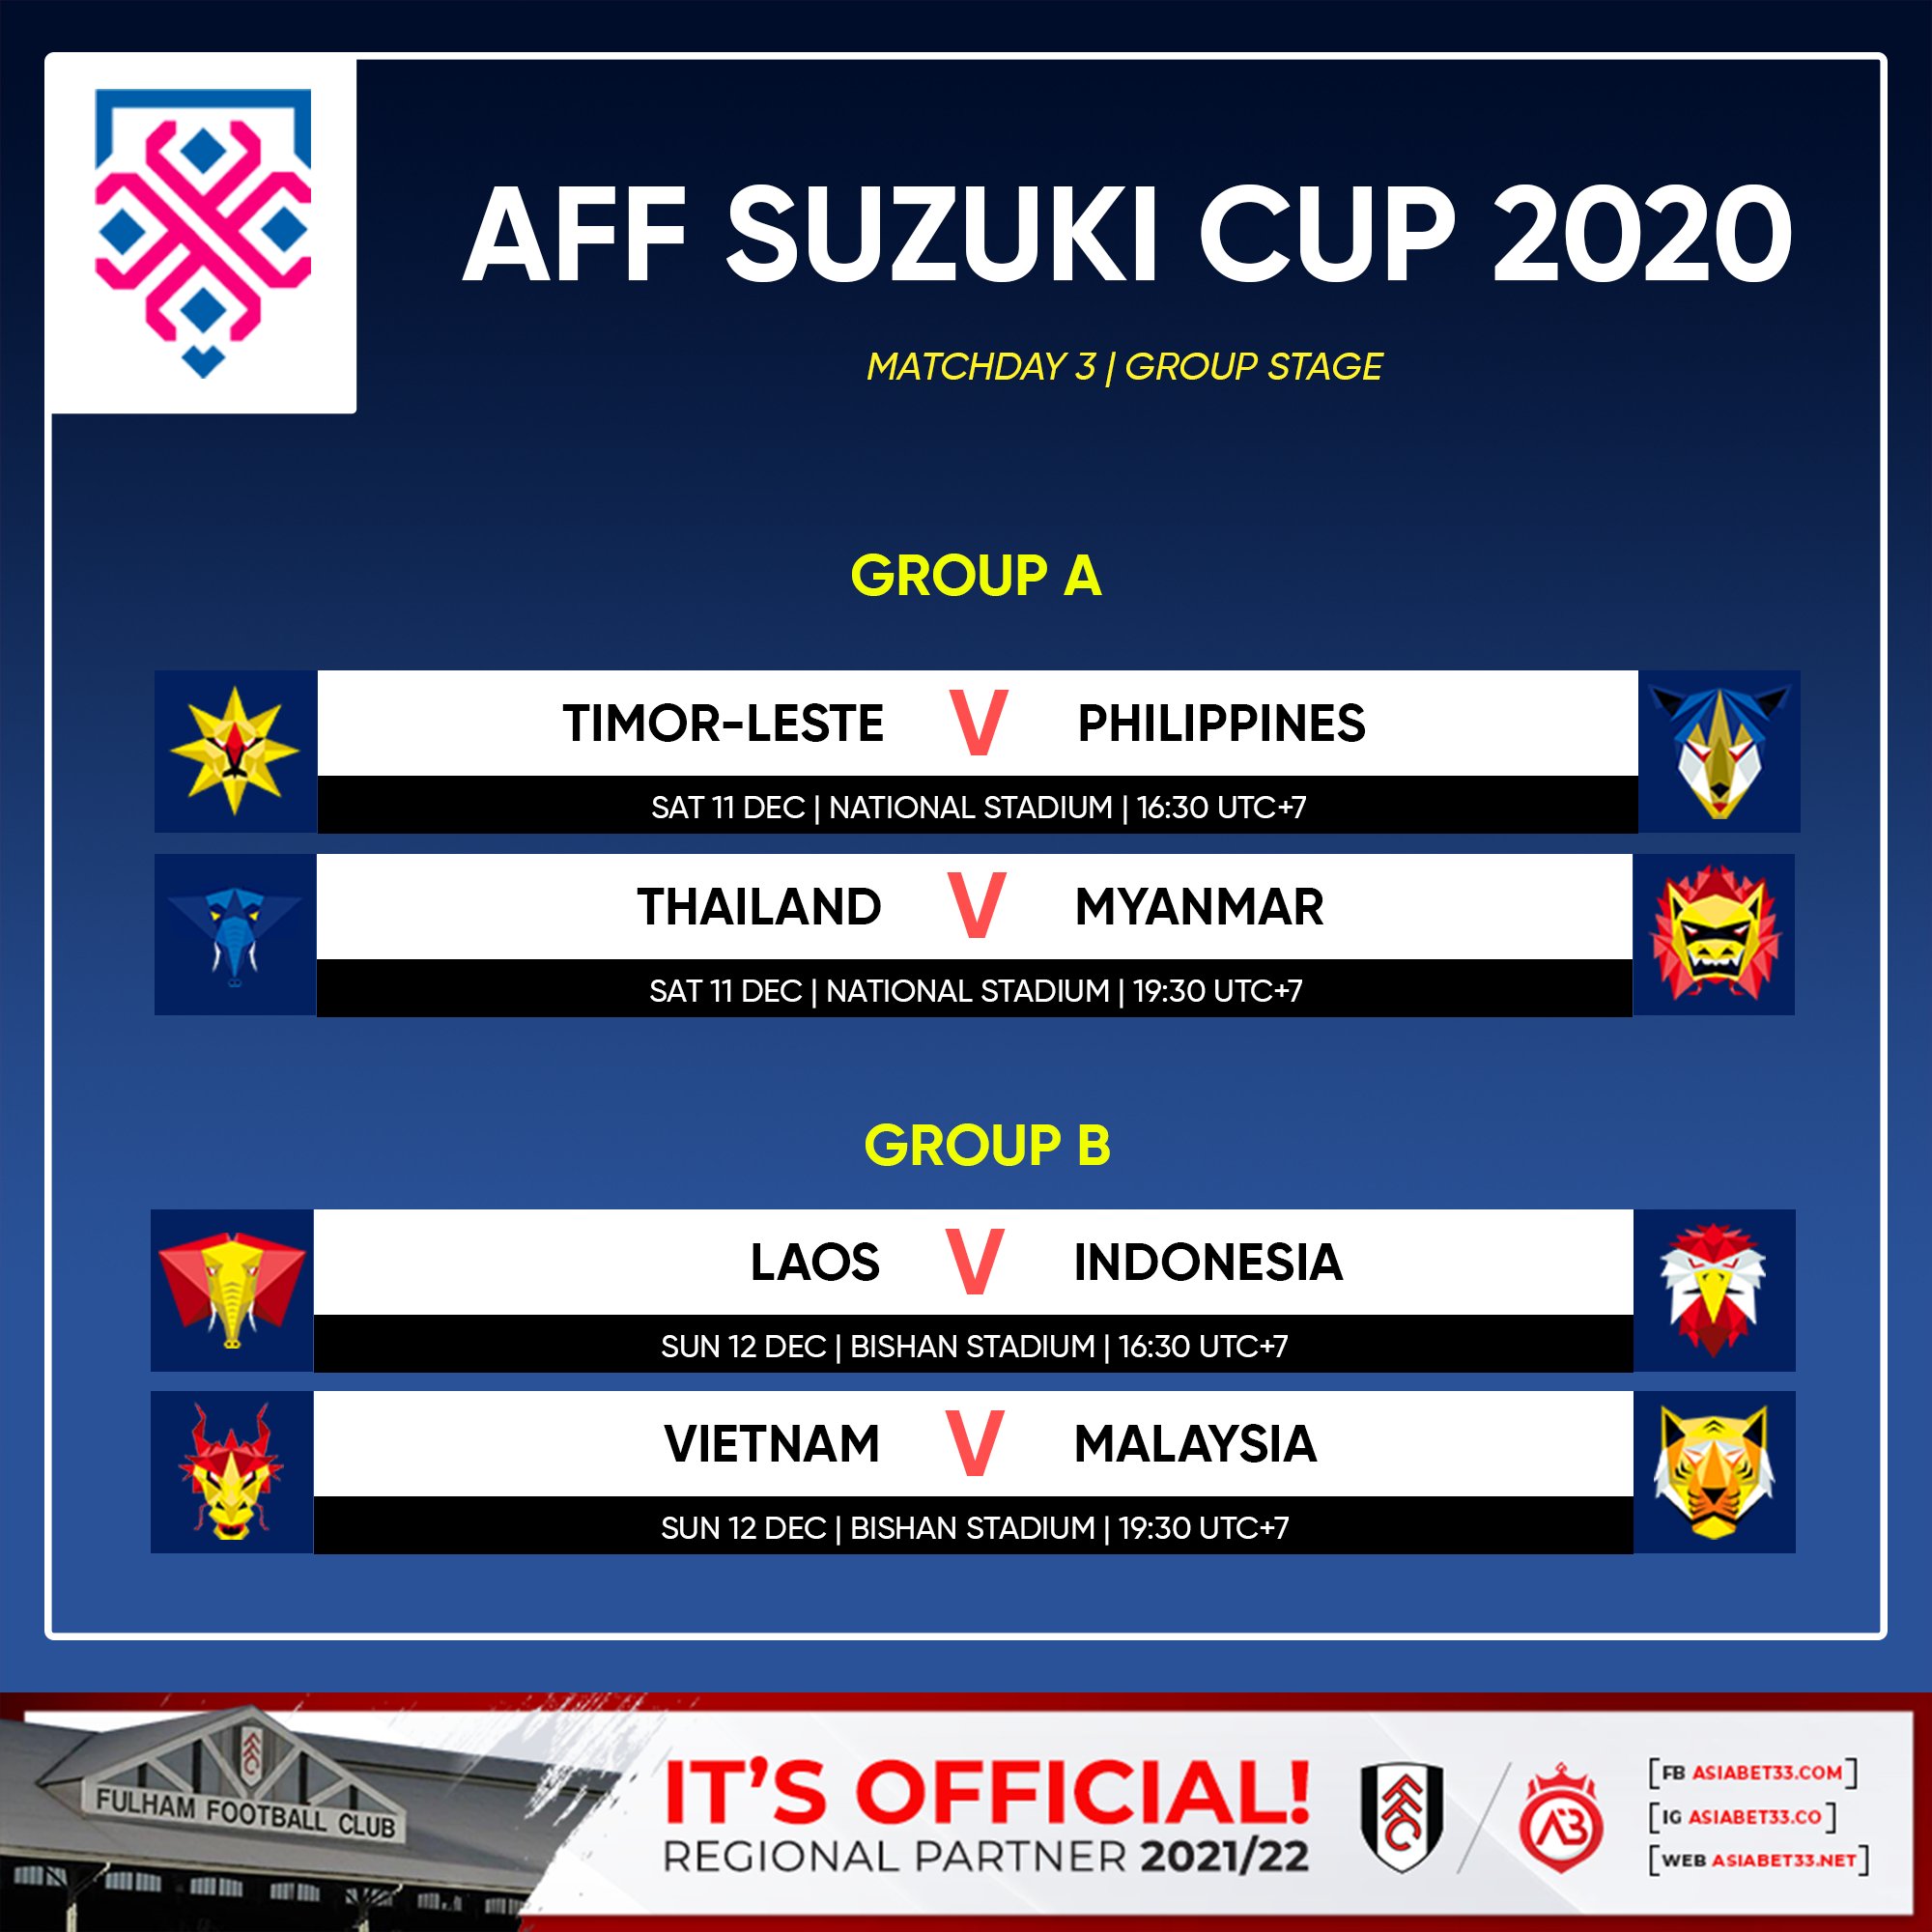 Afc suzuki cup 2020